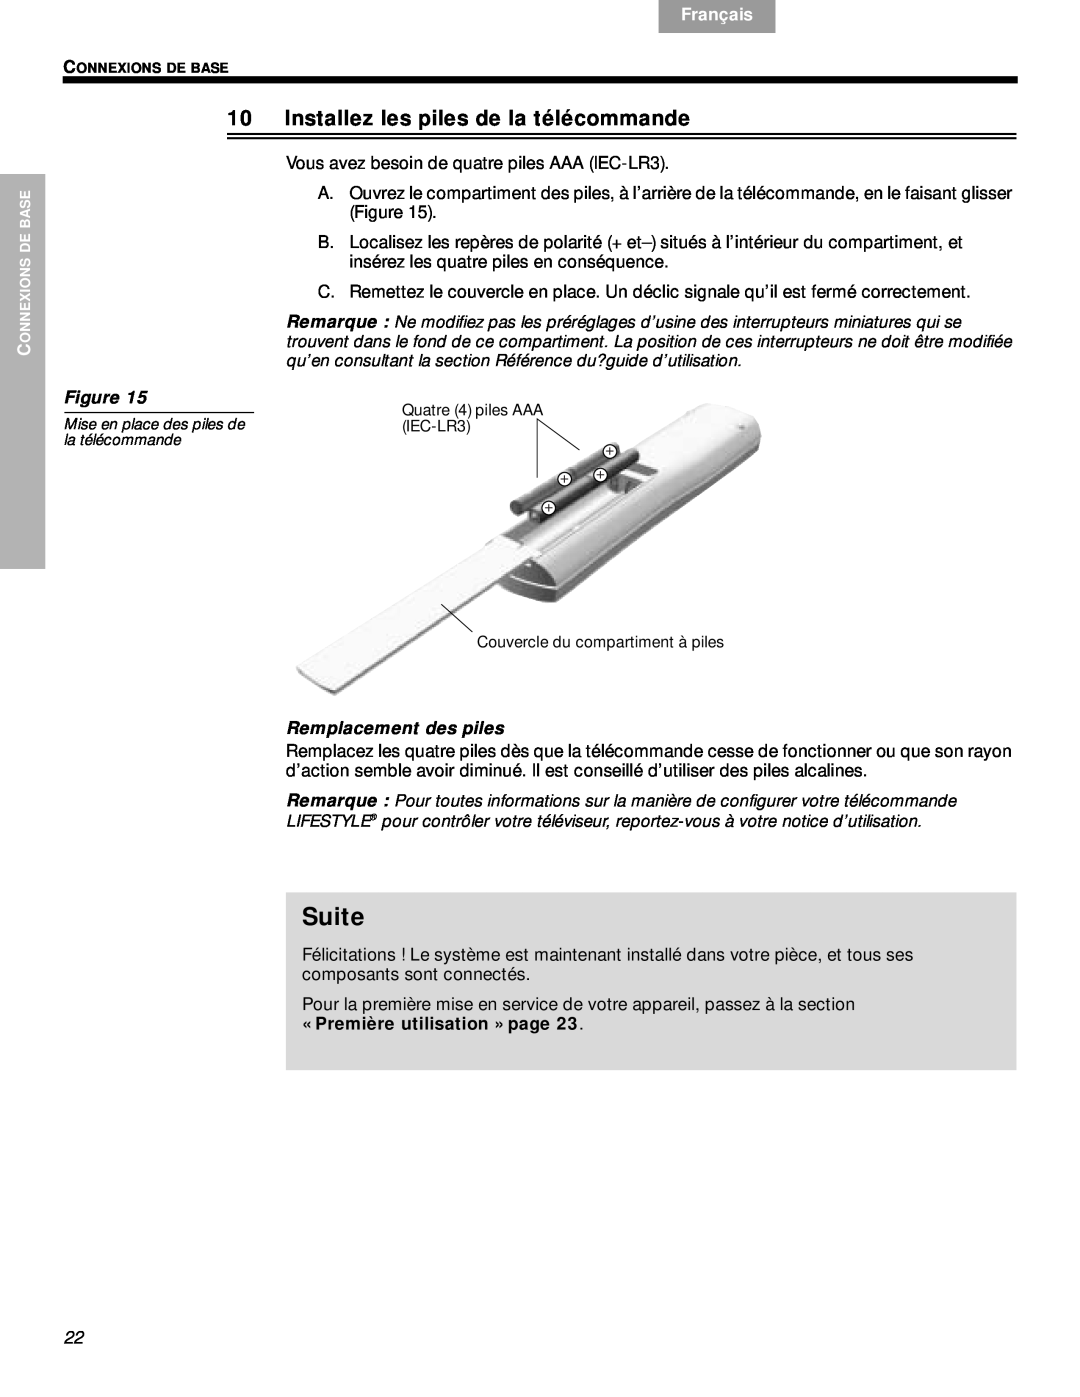 Bose VS-2 Installez les piles de la télécommande, Remplacement des piles, Suite, Svenska, Nederlands, Français, Español 